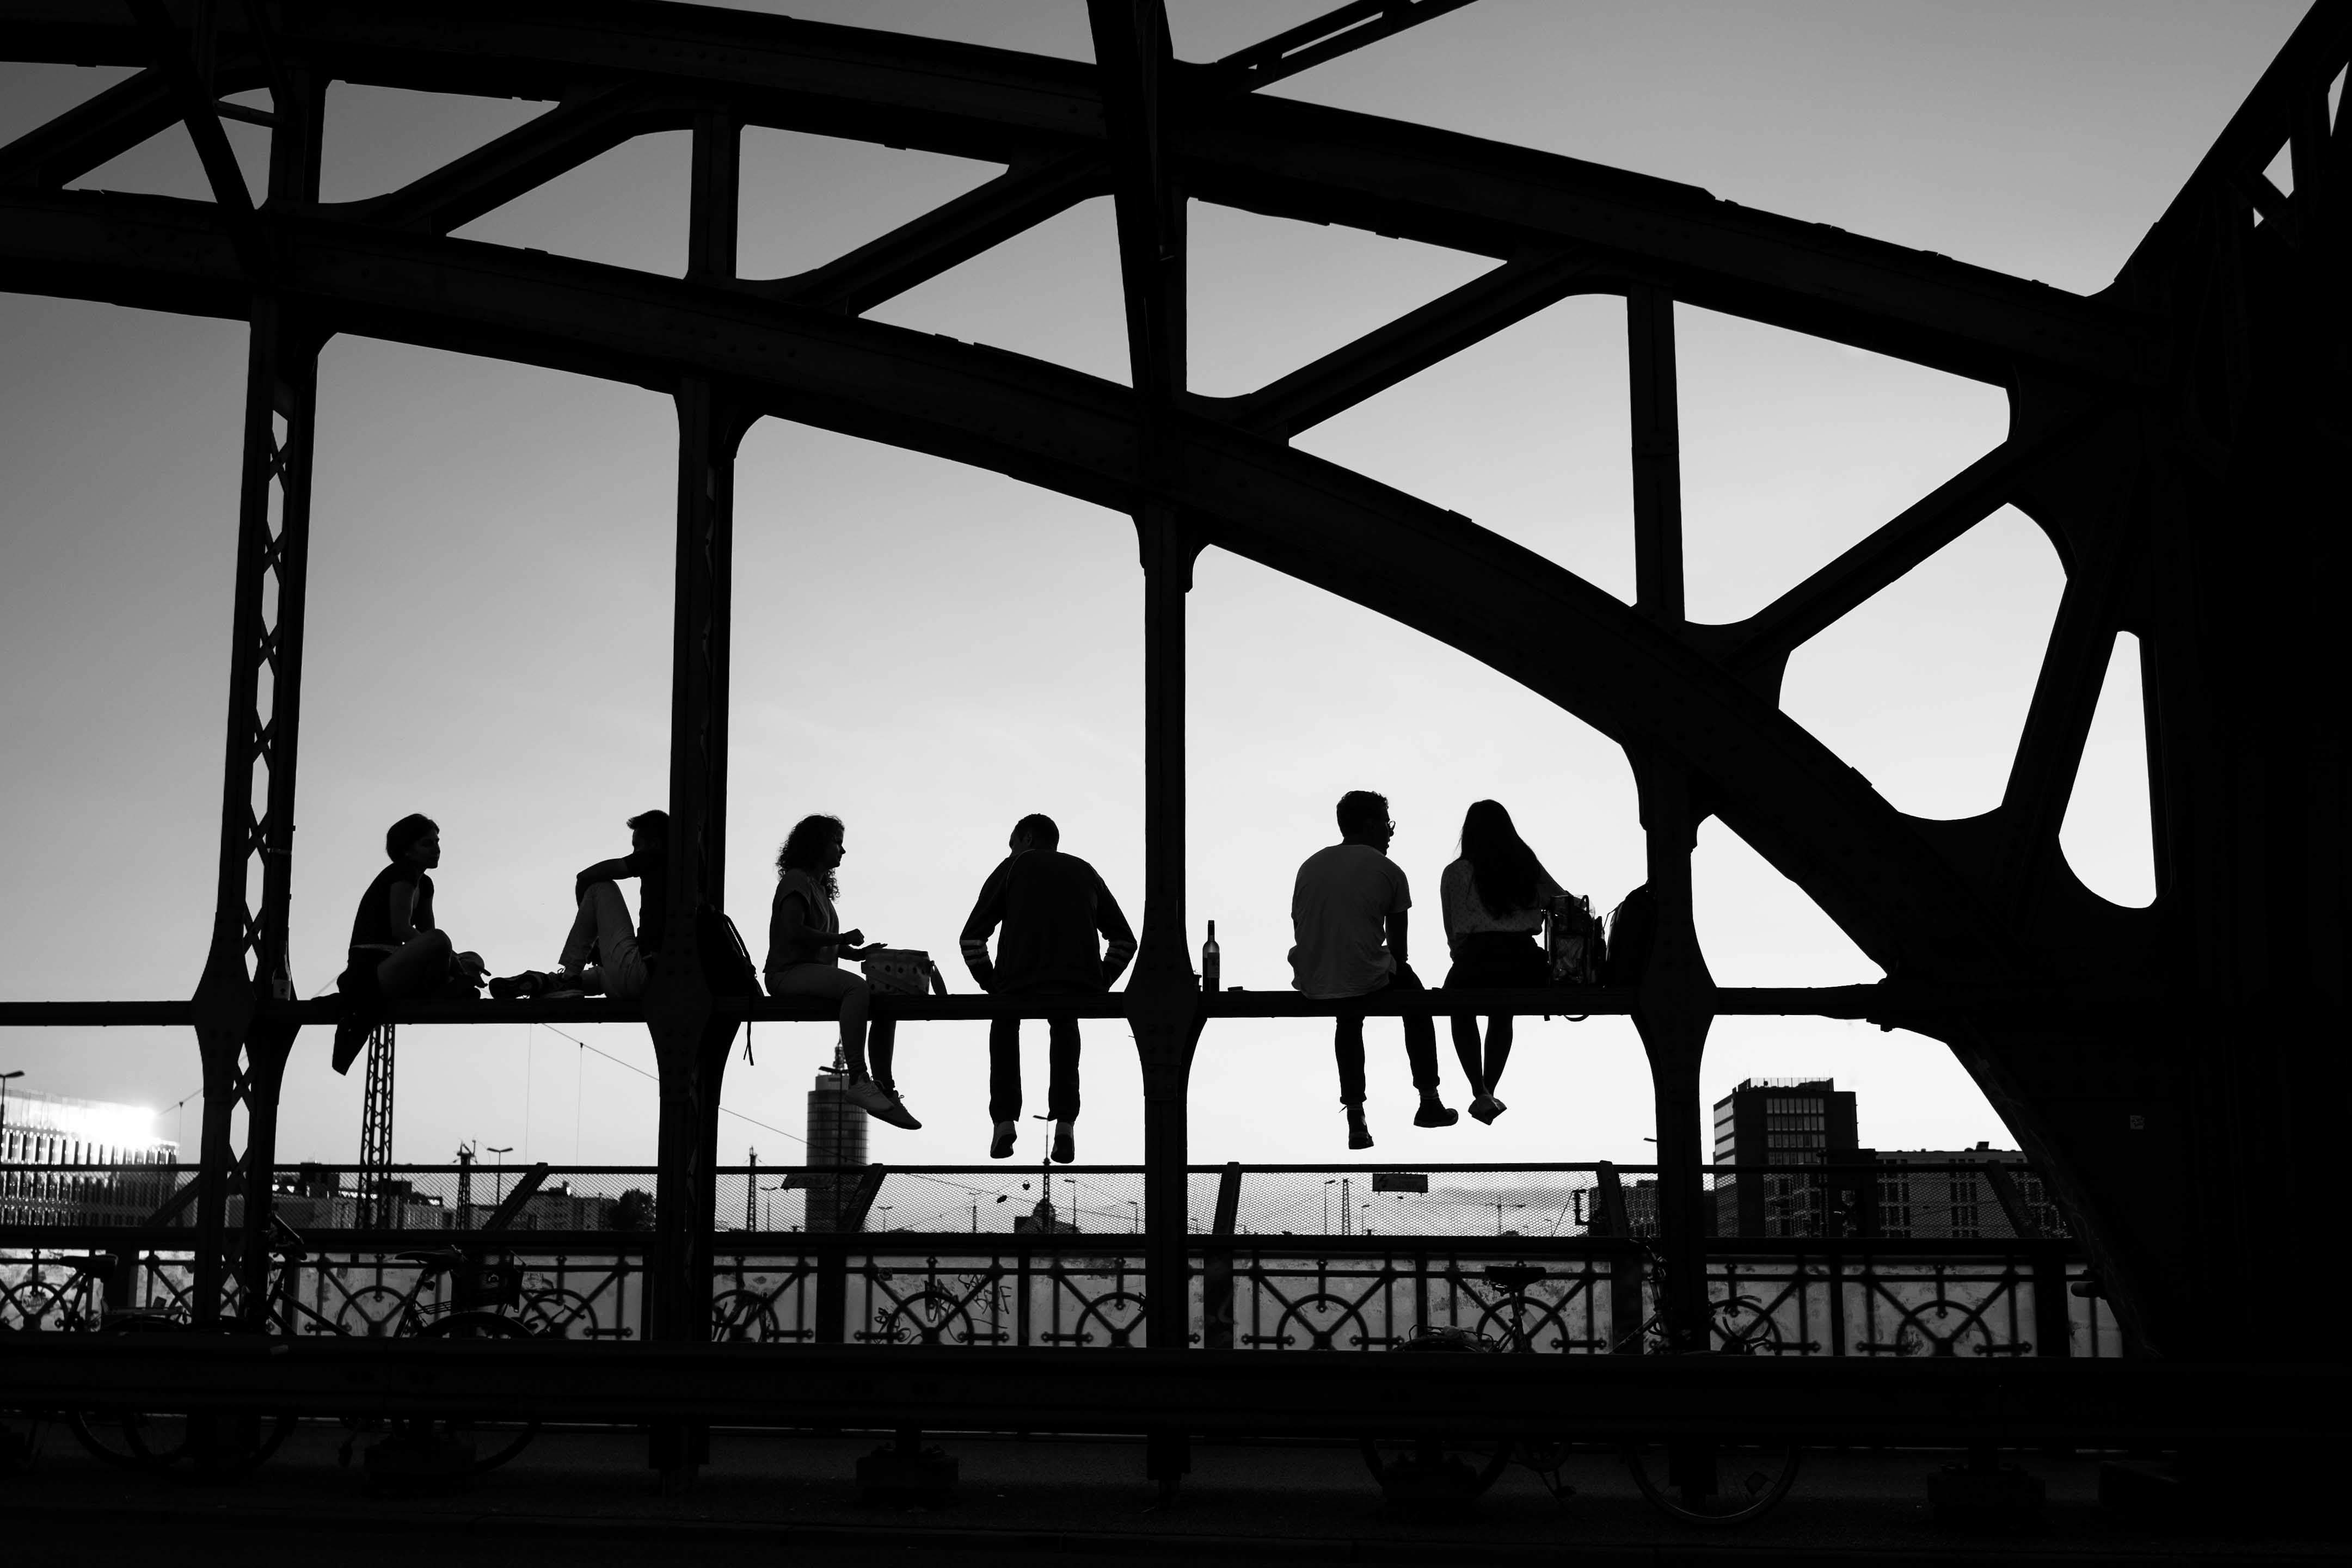 Das Bild zeigt fünf Personen, die auf einer Erhöhung der Hackerbrücke München sitzen und den Blick in die Ferne richten. Die Personen sind als Silhouetten dargestellt und scheinen in ein Gespräch vertieft oder genießen einfach den Ausblick. Die Struktur der Brücke ist geometrisch und bildet ein interessantes Muster im Hintergrund. Das Bild ist in Schwarzweiß und zeigt eine Szene bei Sonnenuntergang. Im Hintergrund ist der klare Himmel sichtbar, der von Gebäuden am Horizont unterbrochen wird. Das Motiv kann man als Wandbild erwerben.